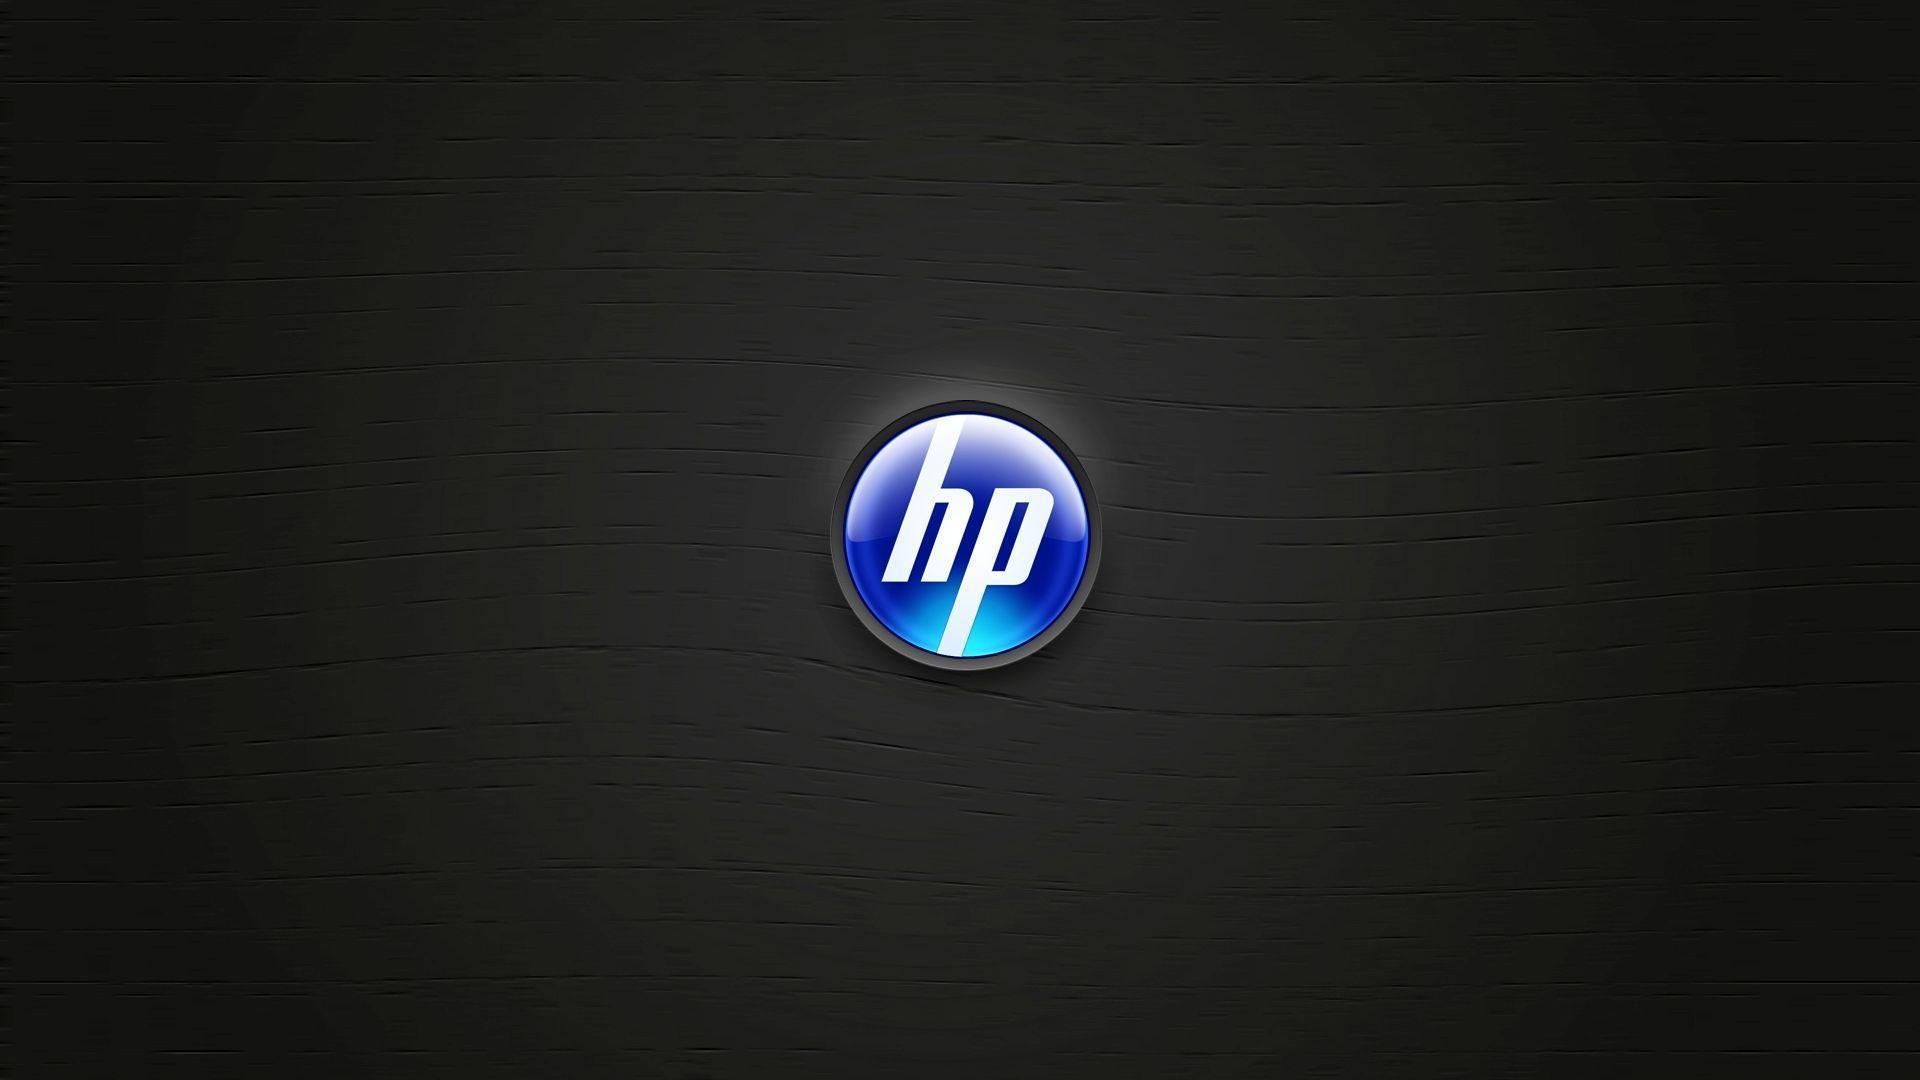 Logos For > Hp Logo Wallpaper Free Download